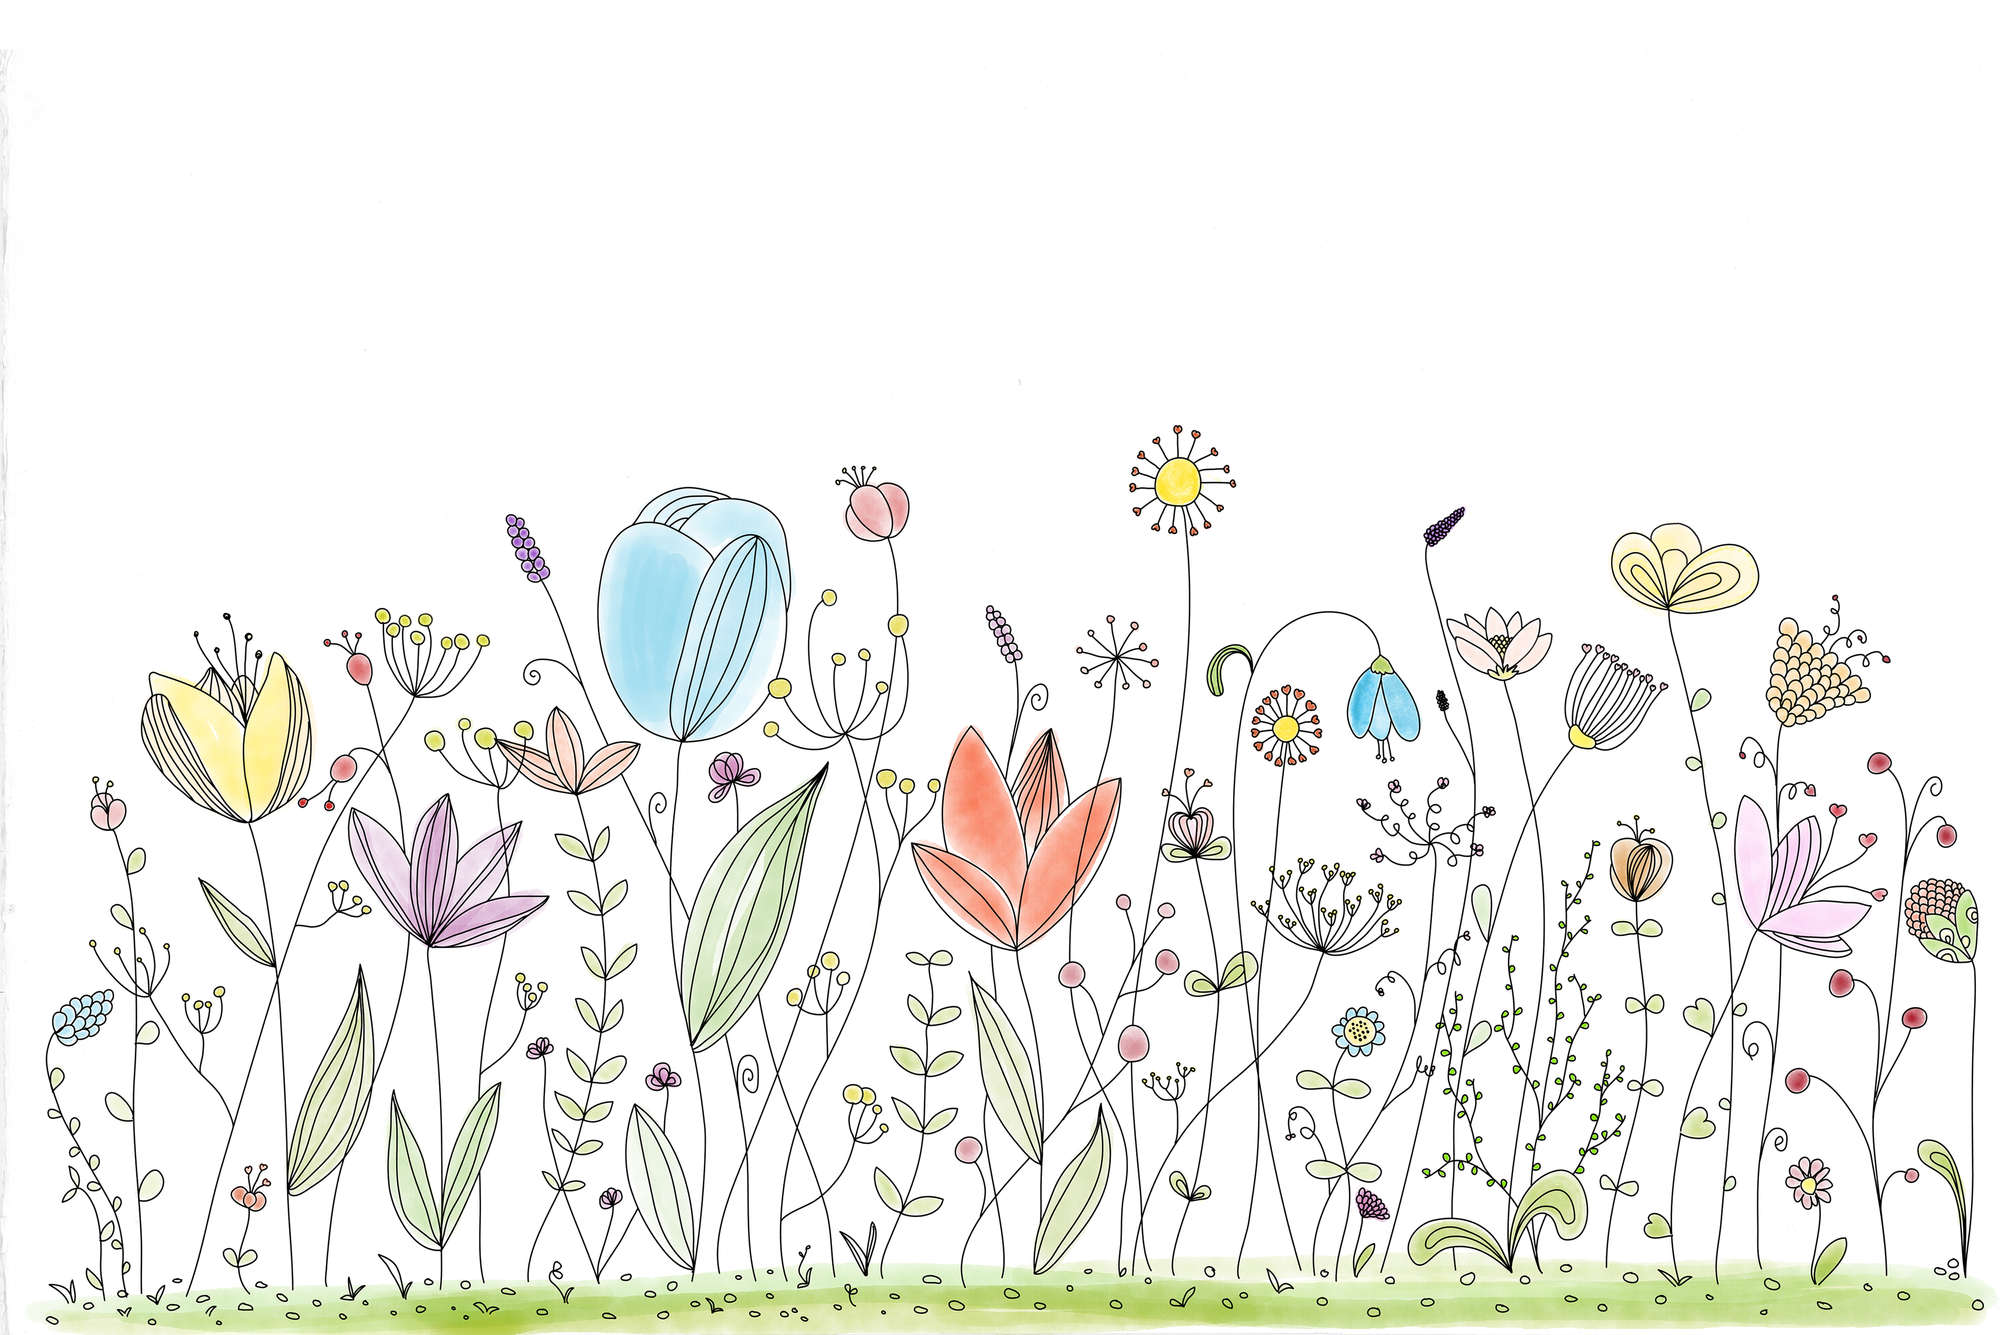             Fotomurali per bambini con fiori colorati disegnati su vello liscio opaco
        